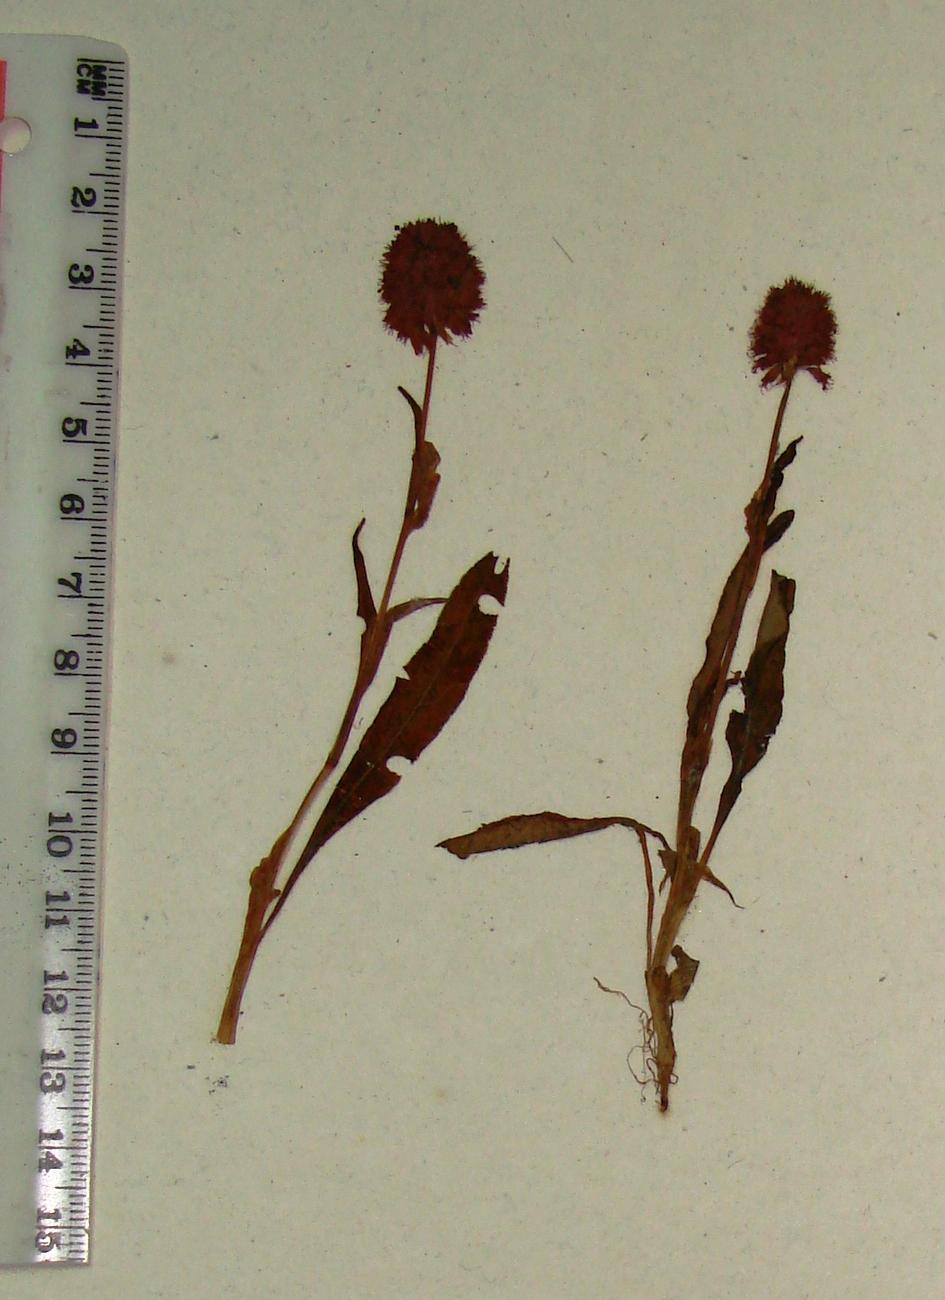 /wp-content/uploads/2020/10/P.macrophyllum_Herbarium%20specimen.JPG